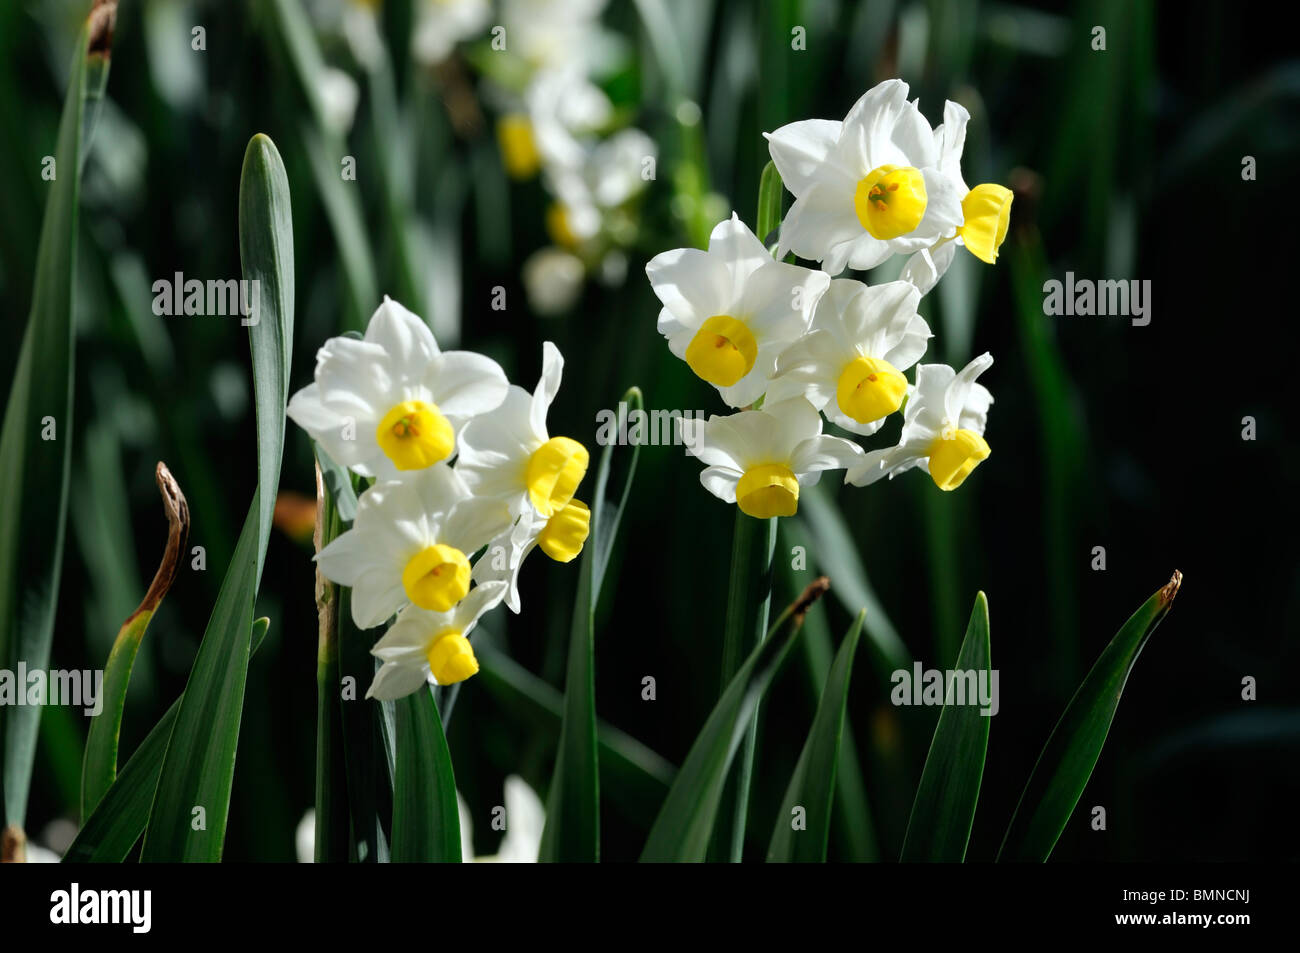 Narciso minnow Narciso cerca macro photo flower bloom blossom Foto de stock